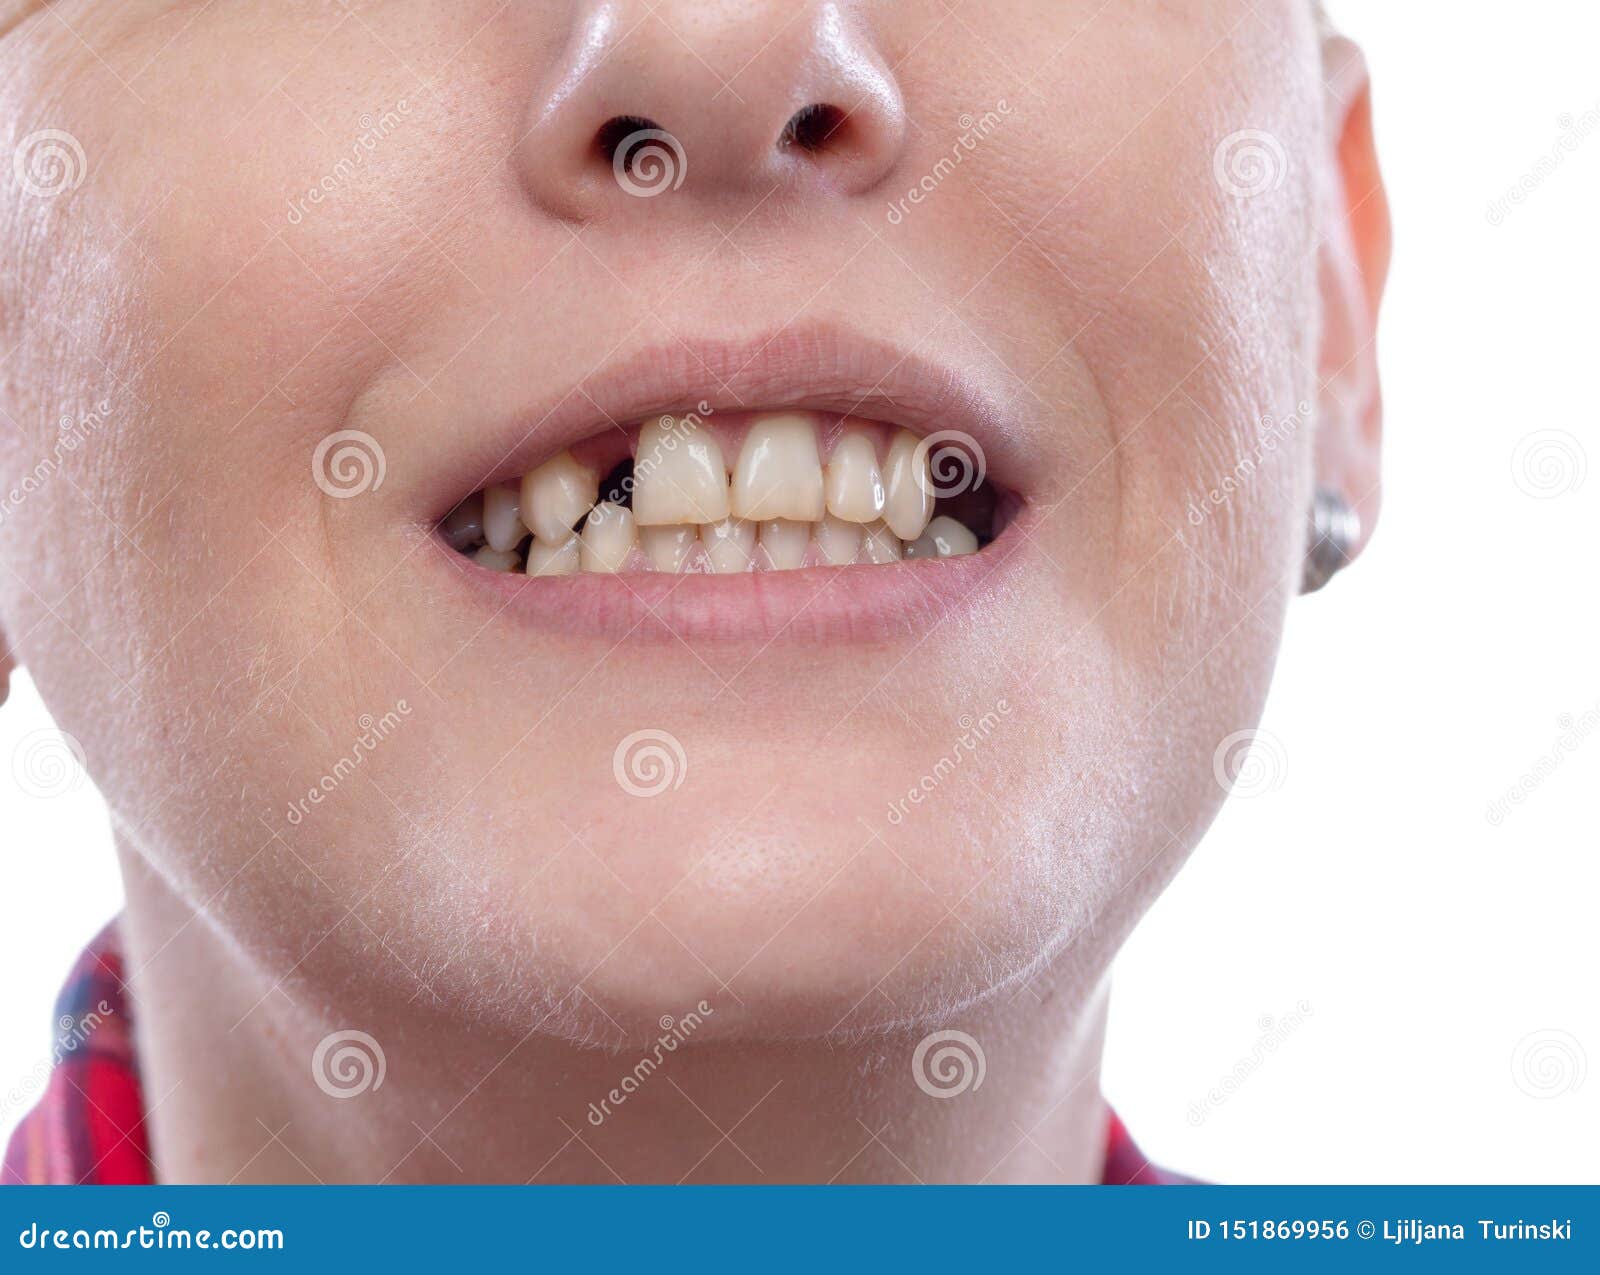 一个牙断的男子的肖像 库存照片. 图片 包括有 牙科医生, 关心, 表面, 腐朽, 问题, 经纪, 滴下 - 220791724